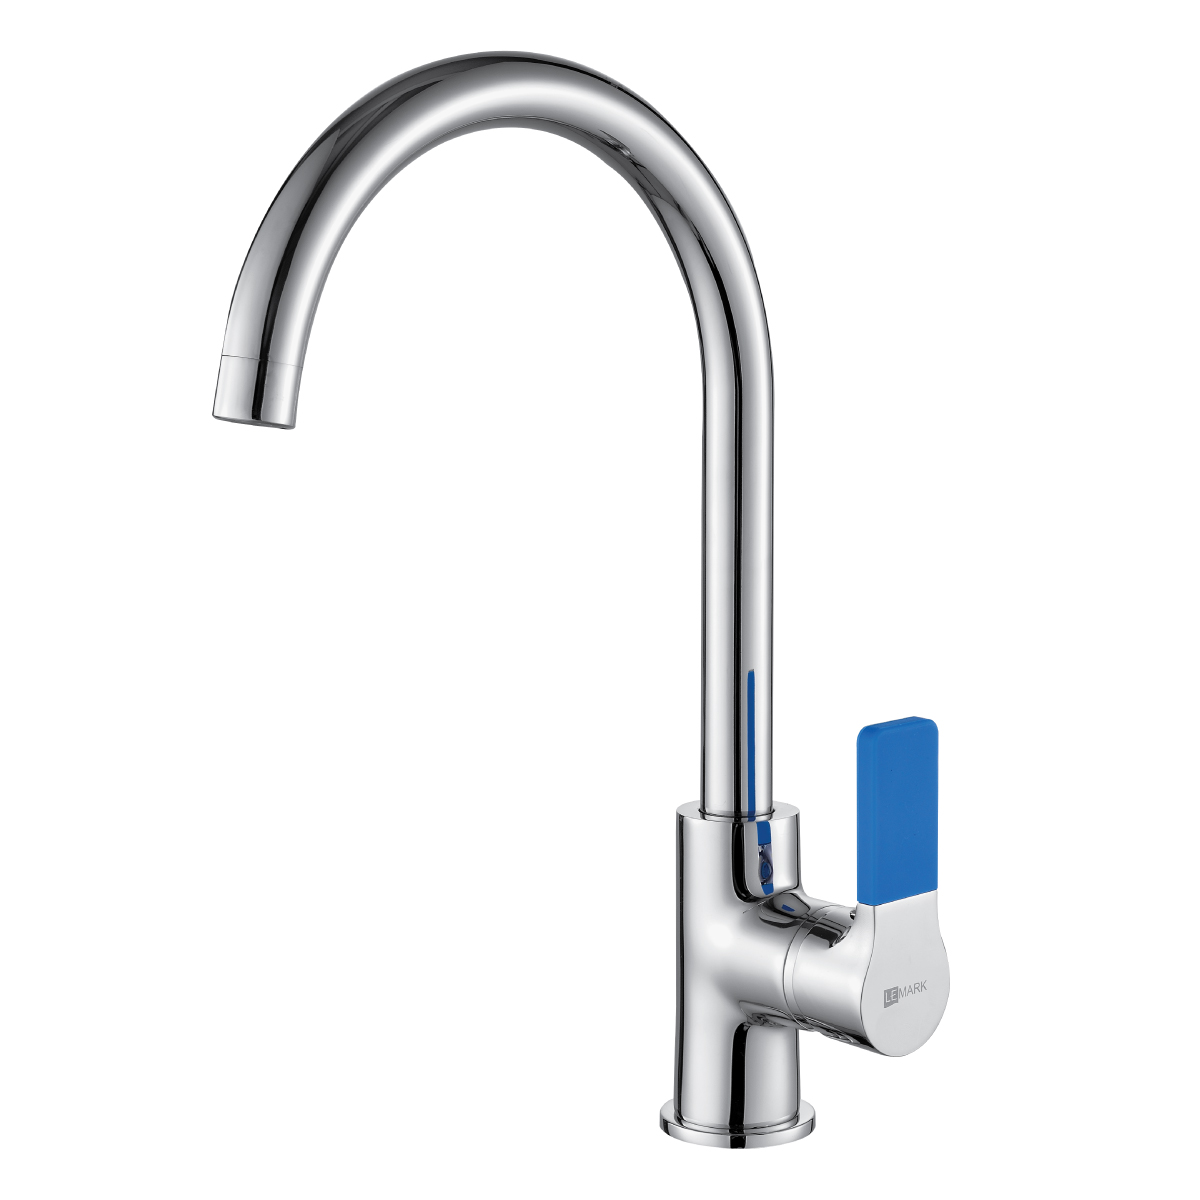 LM0605C Kitchen faucet with swivel spout